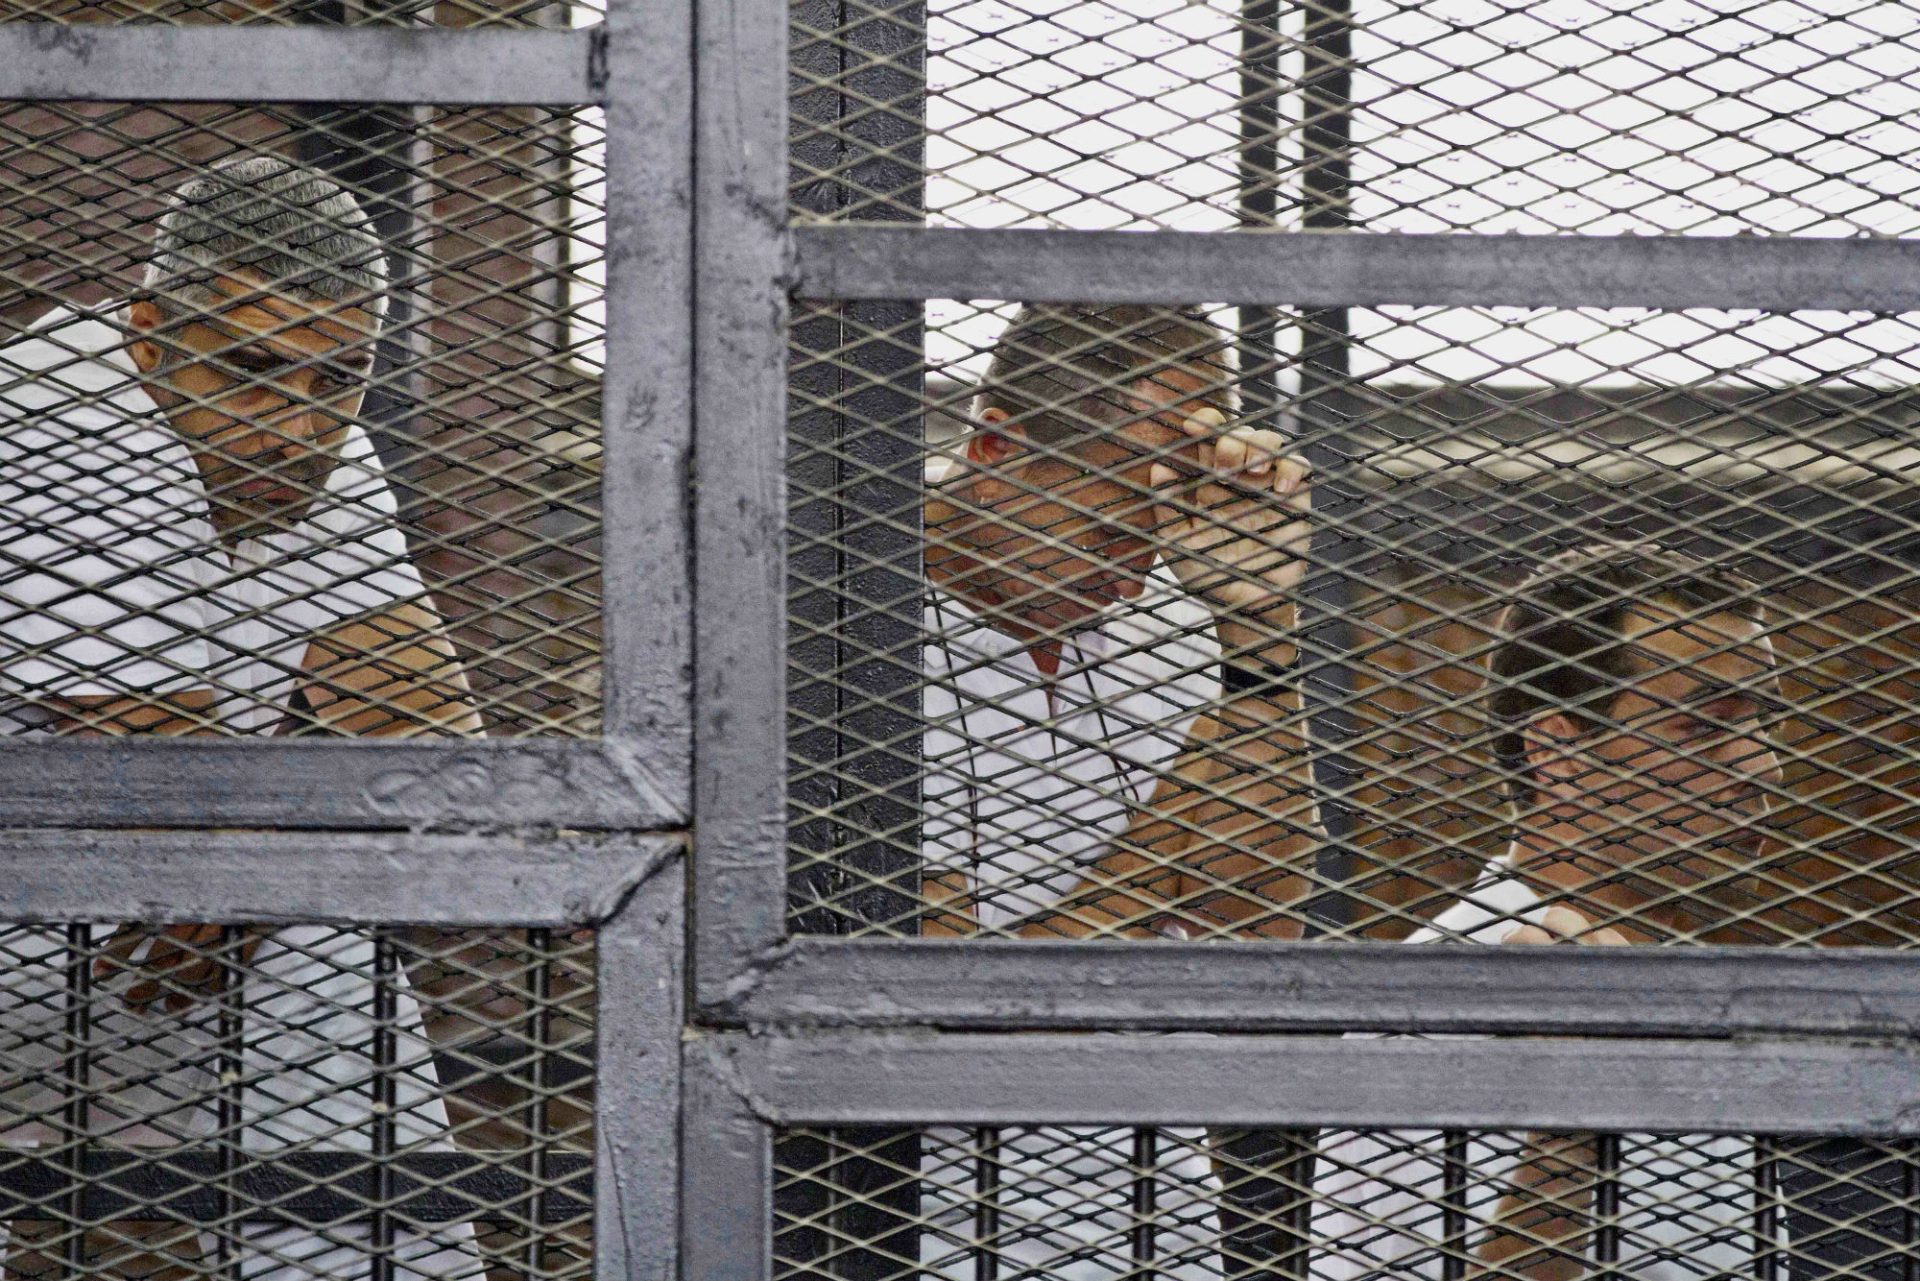 Jornalistas da al-Jazeera condenados a sete anos de prisão